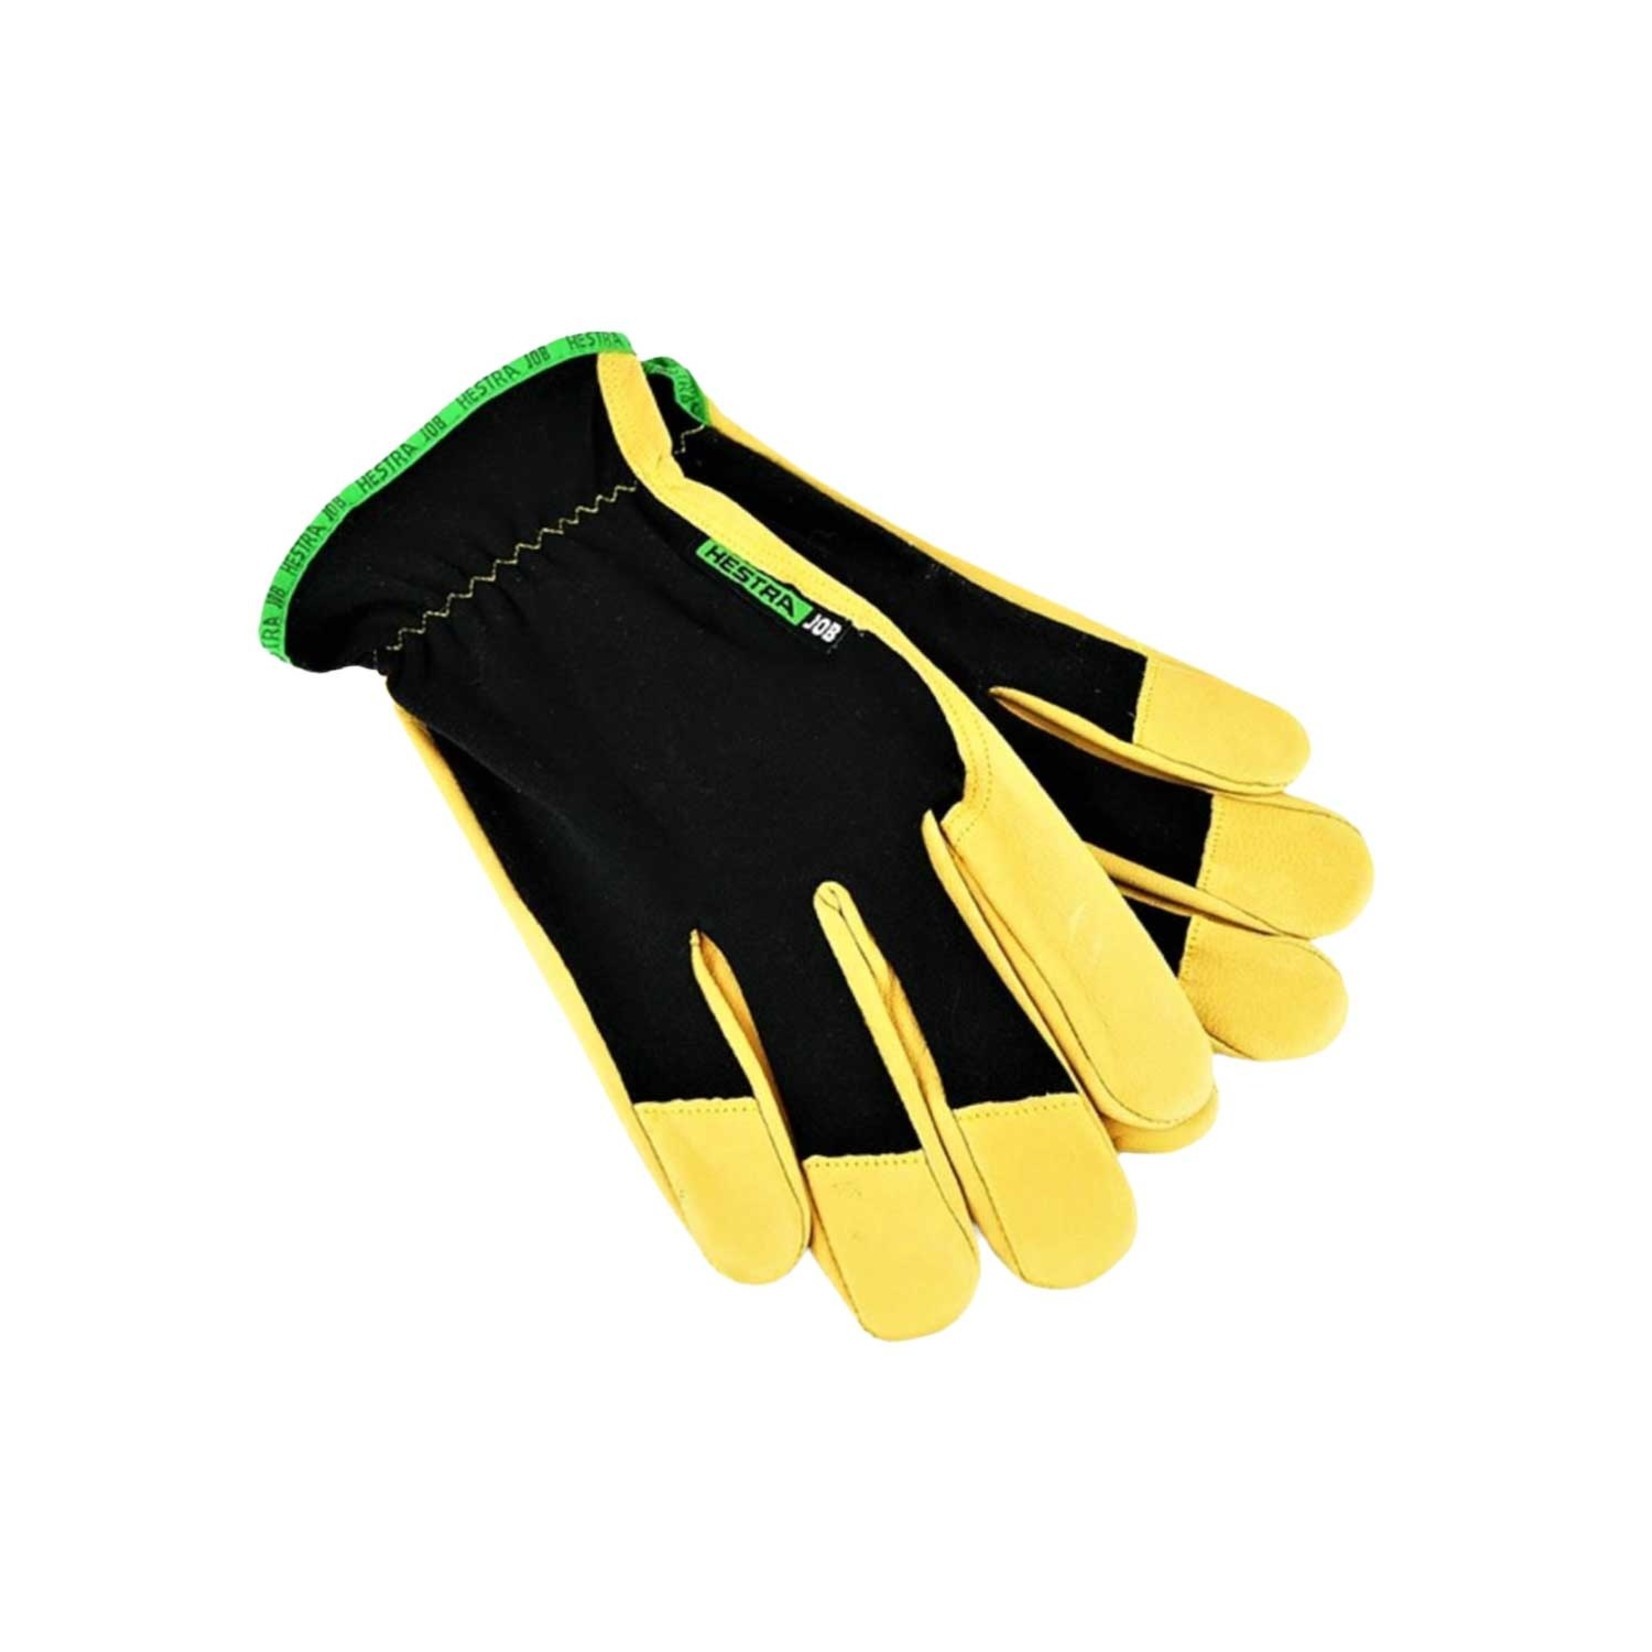 Golden Grip Gloves